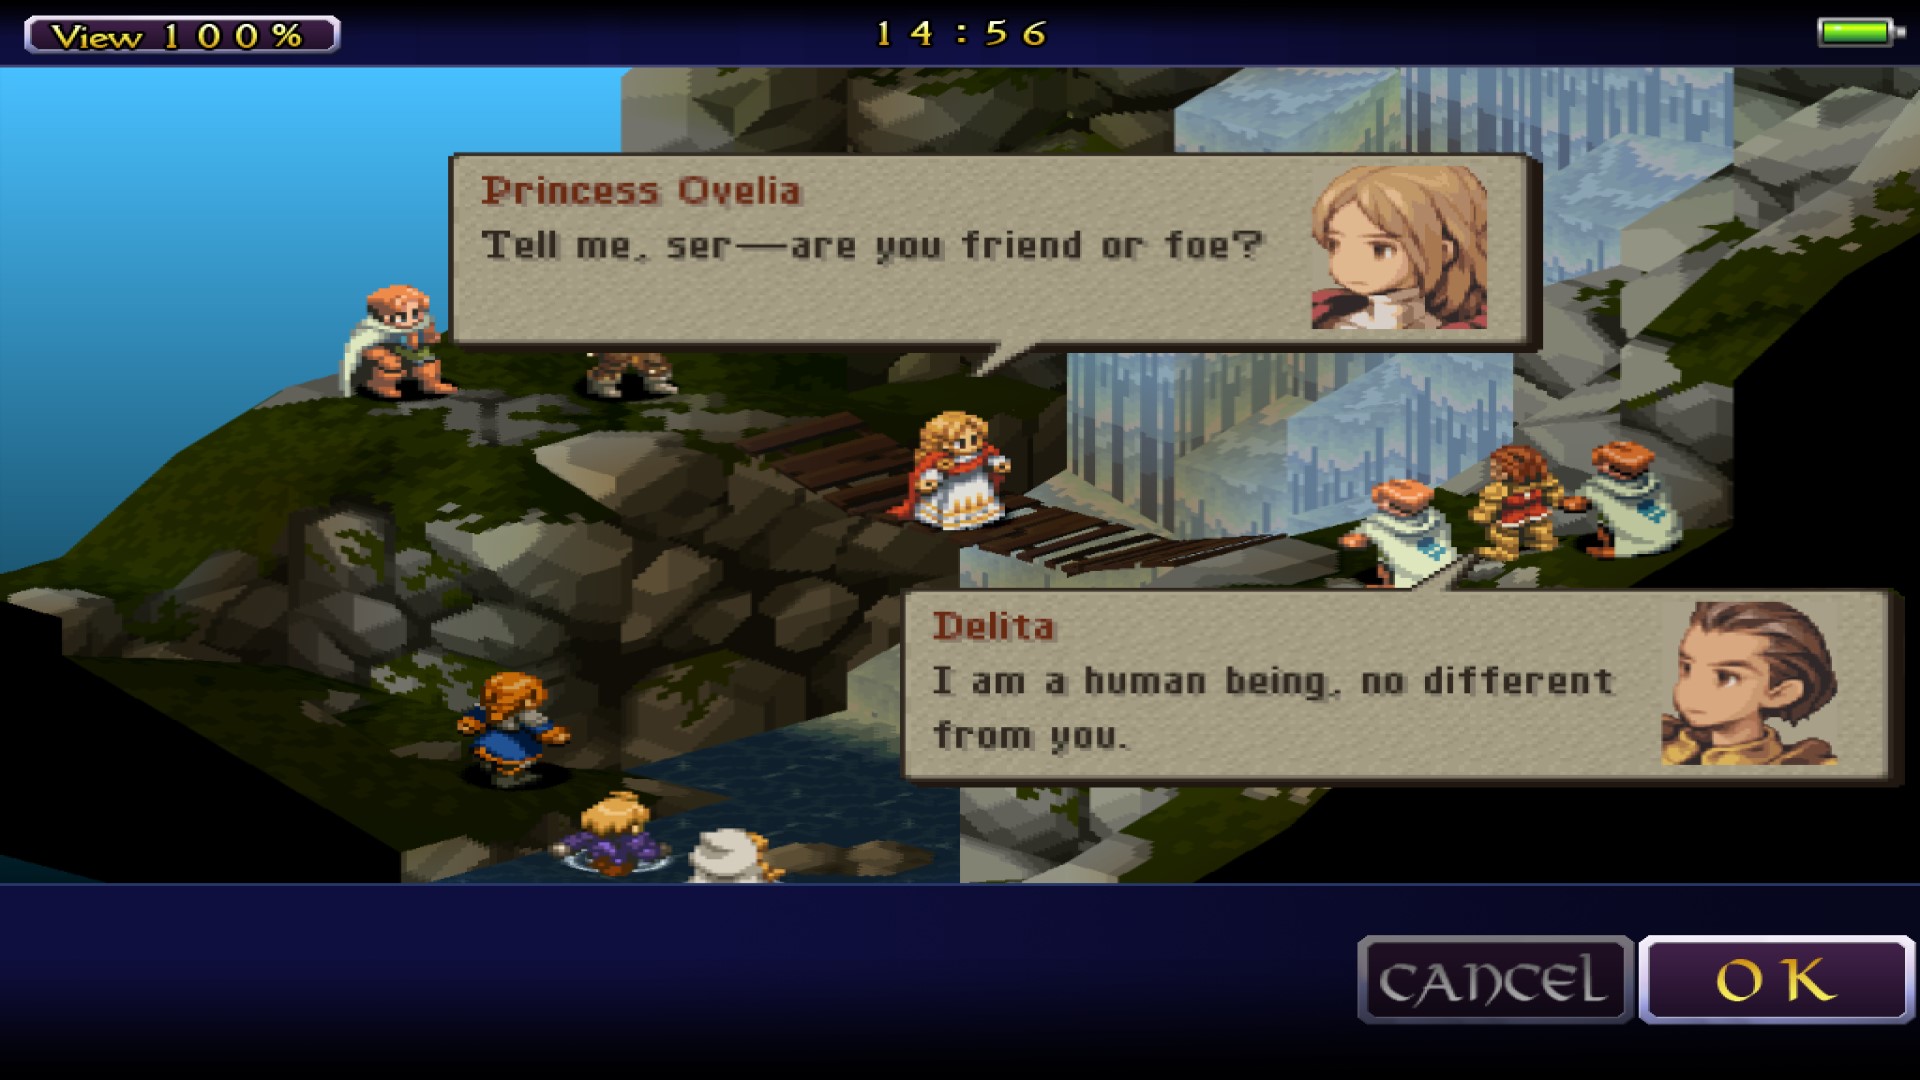 เกมกลยุทธ์มือถือที่ดีที่สุด: Final Fantasy Tactics: War of the Lions ตัวละครกำลังยืนอยู่รอบสะพานน้ำตก ตัวละครเจ้าหญิงโอเวเลียกำลังพูด